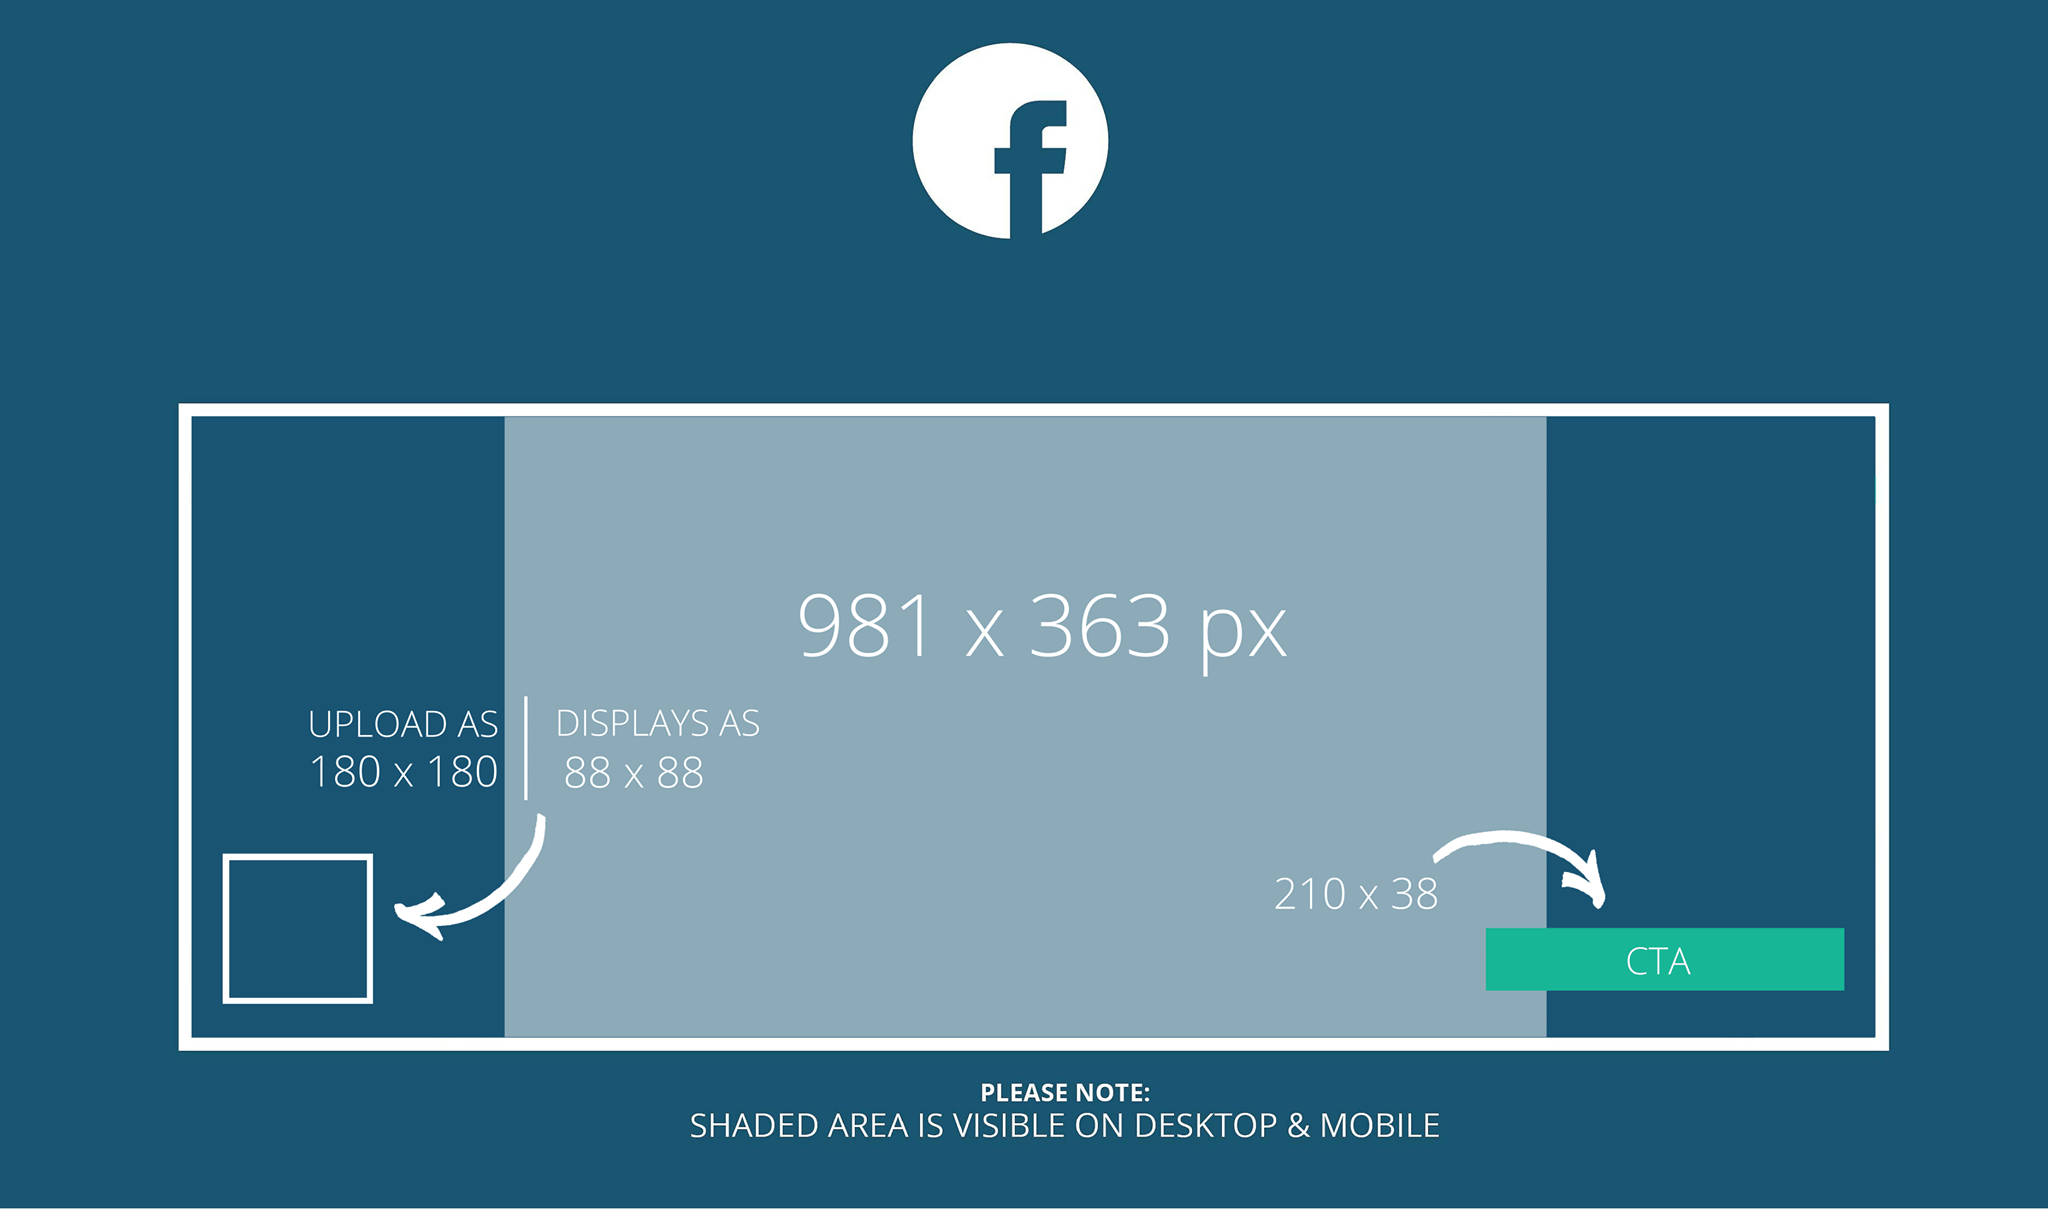 Kích thước size ảnh chuẩn cho Fanpage Facebook là bao nhiêu